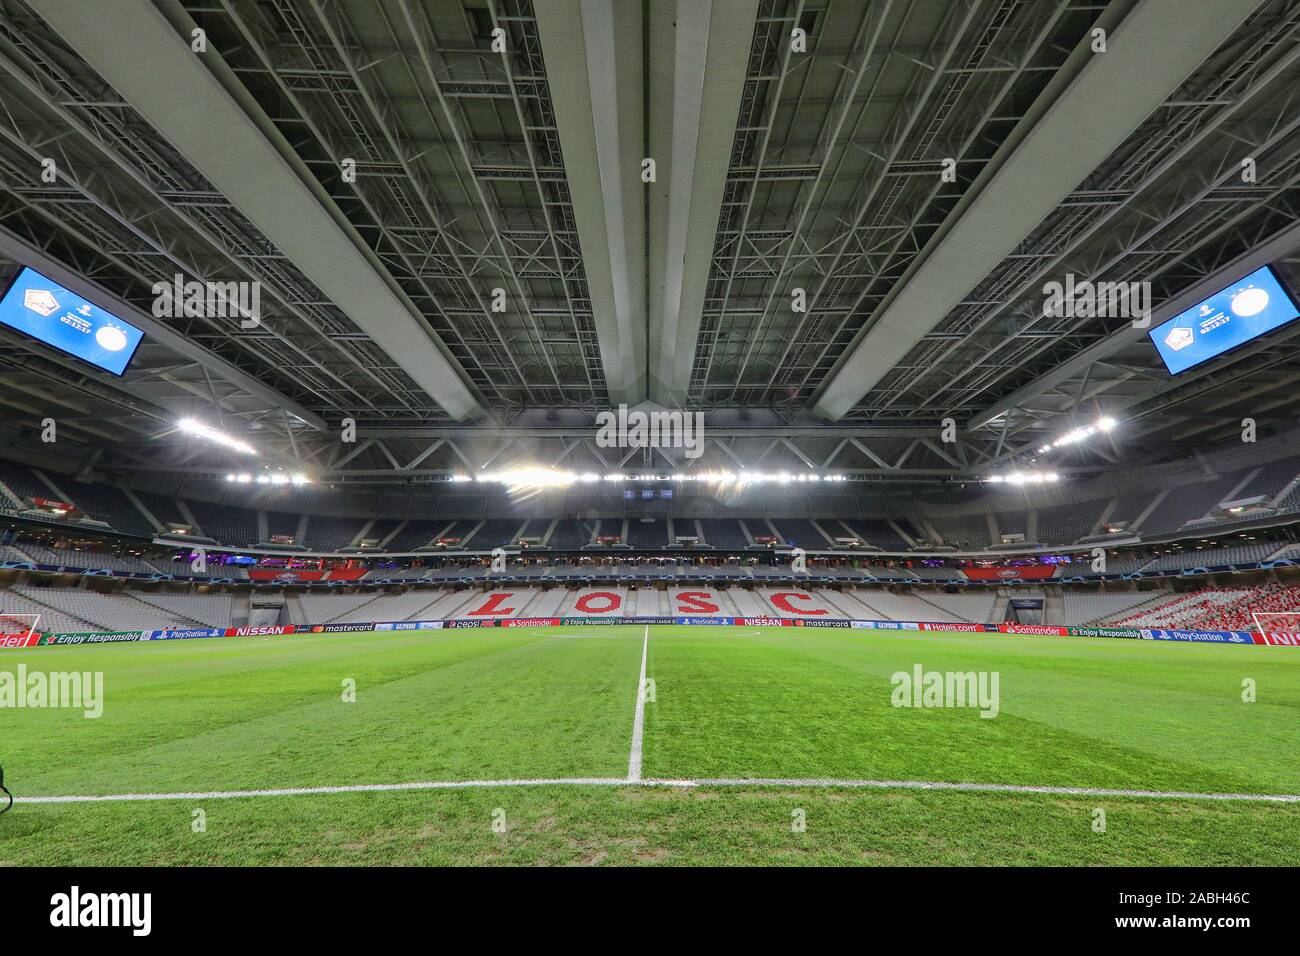 Lille, Francia. 27 Nov, 2019. Stade Pierre-Mauroy , la Liga de Campeones de fútbol temporada 2019 / 2020. Descripción del estadio durante el partido Lille OSC - Ajax. Crédito: disparos Pro/Alamy Live News Foto de stock